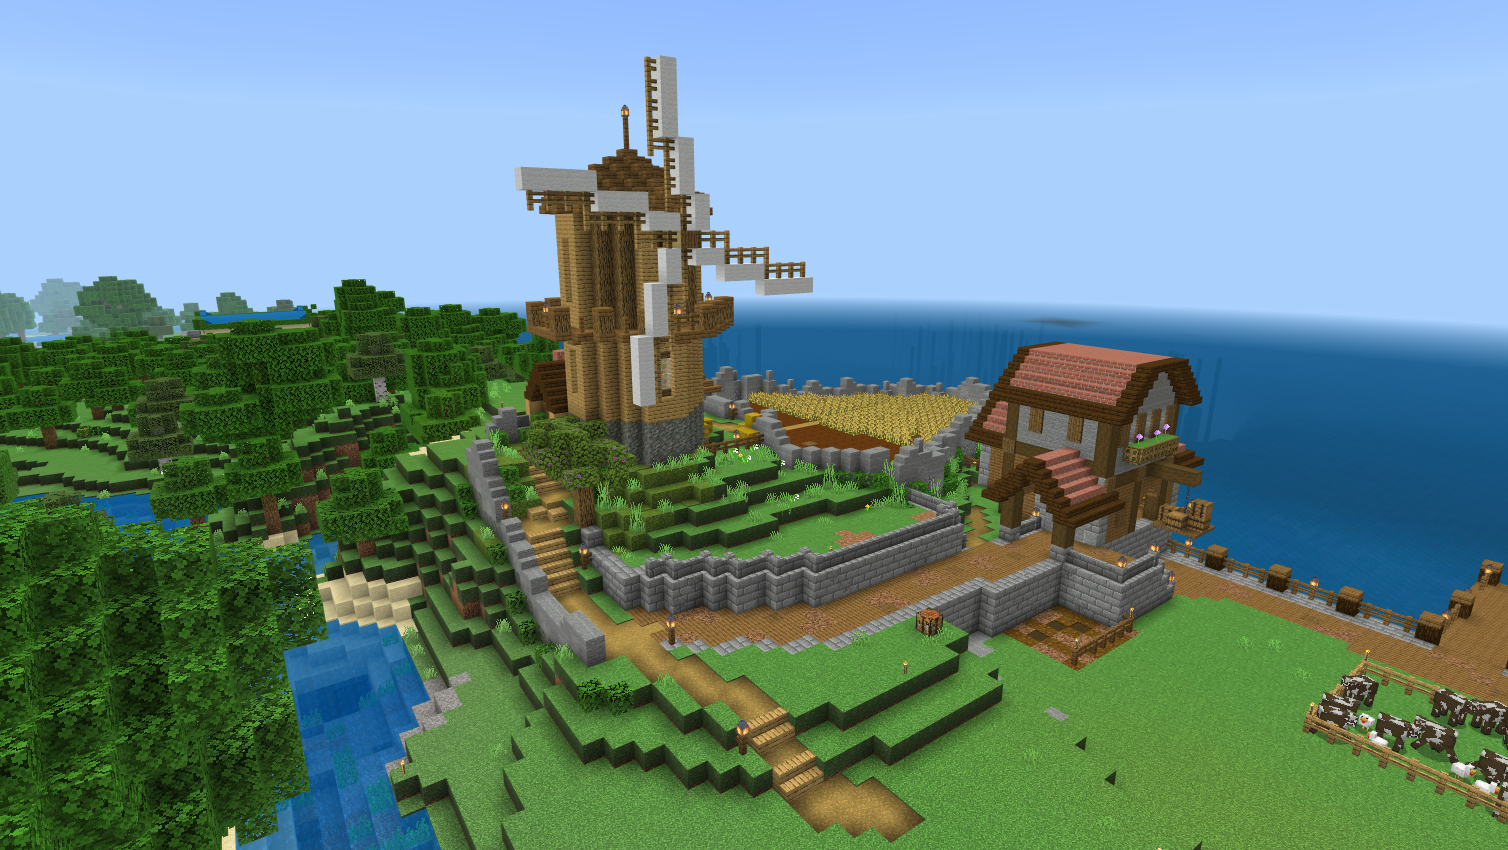 Cute coastal farm with a windmill